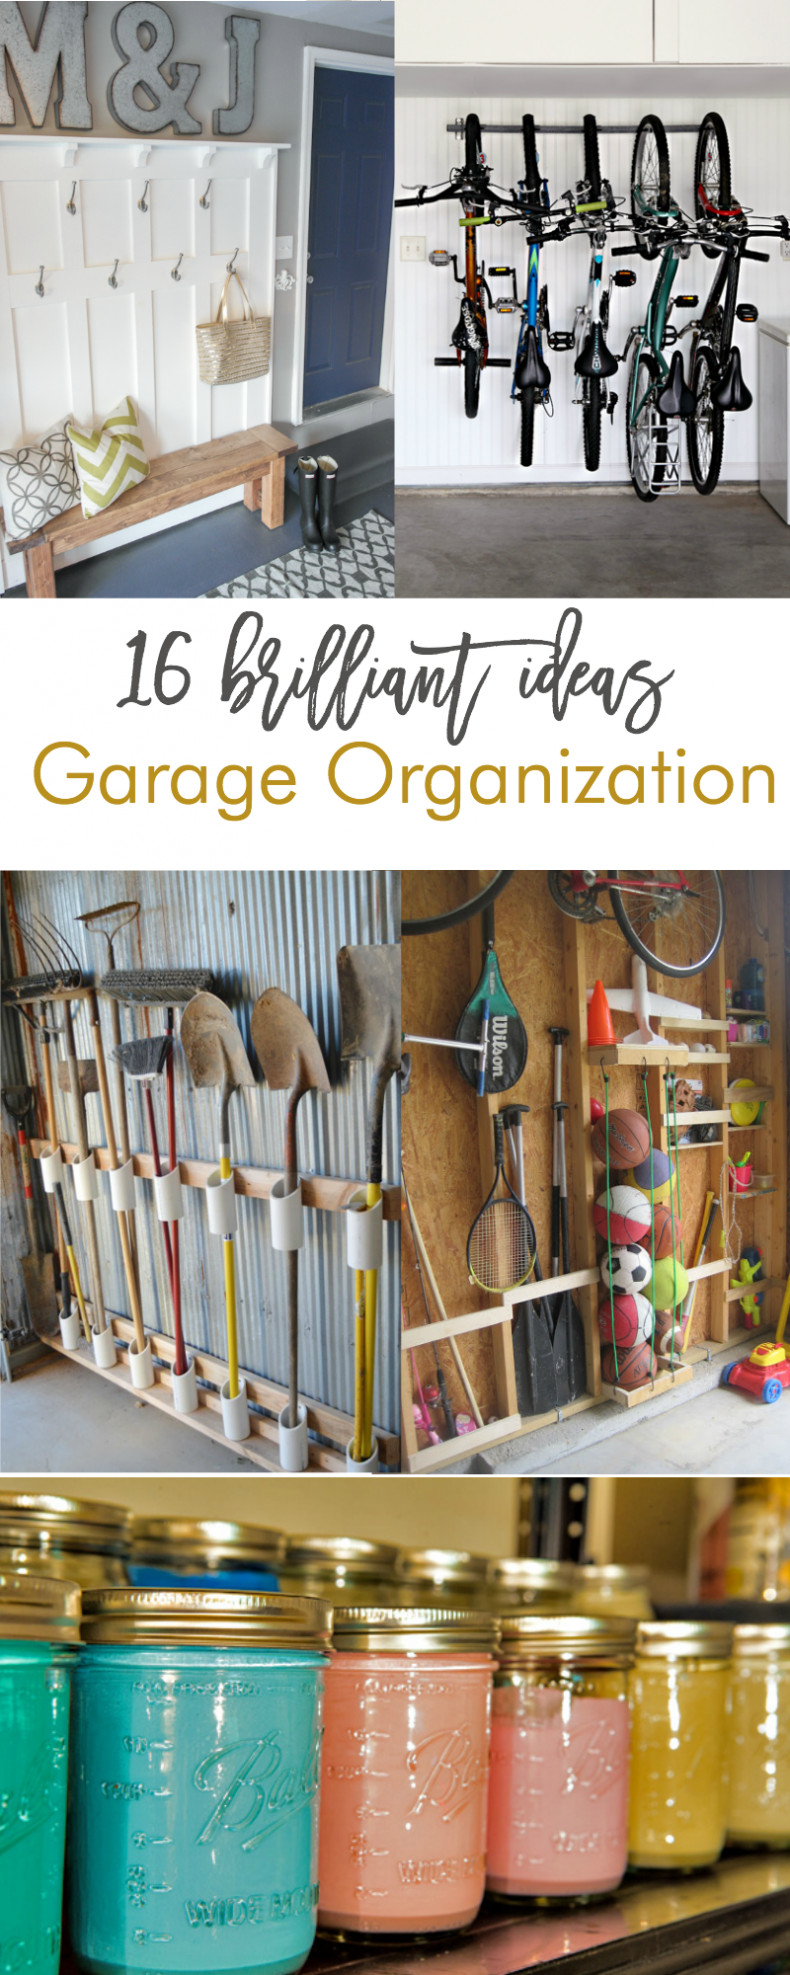 Garage Organization DIY
 16 Brilliant DIY Garage Organization Ideas